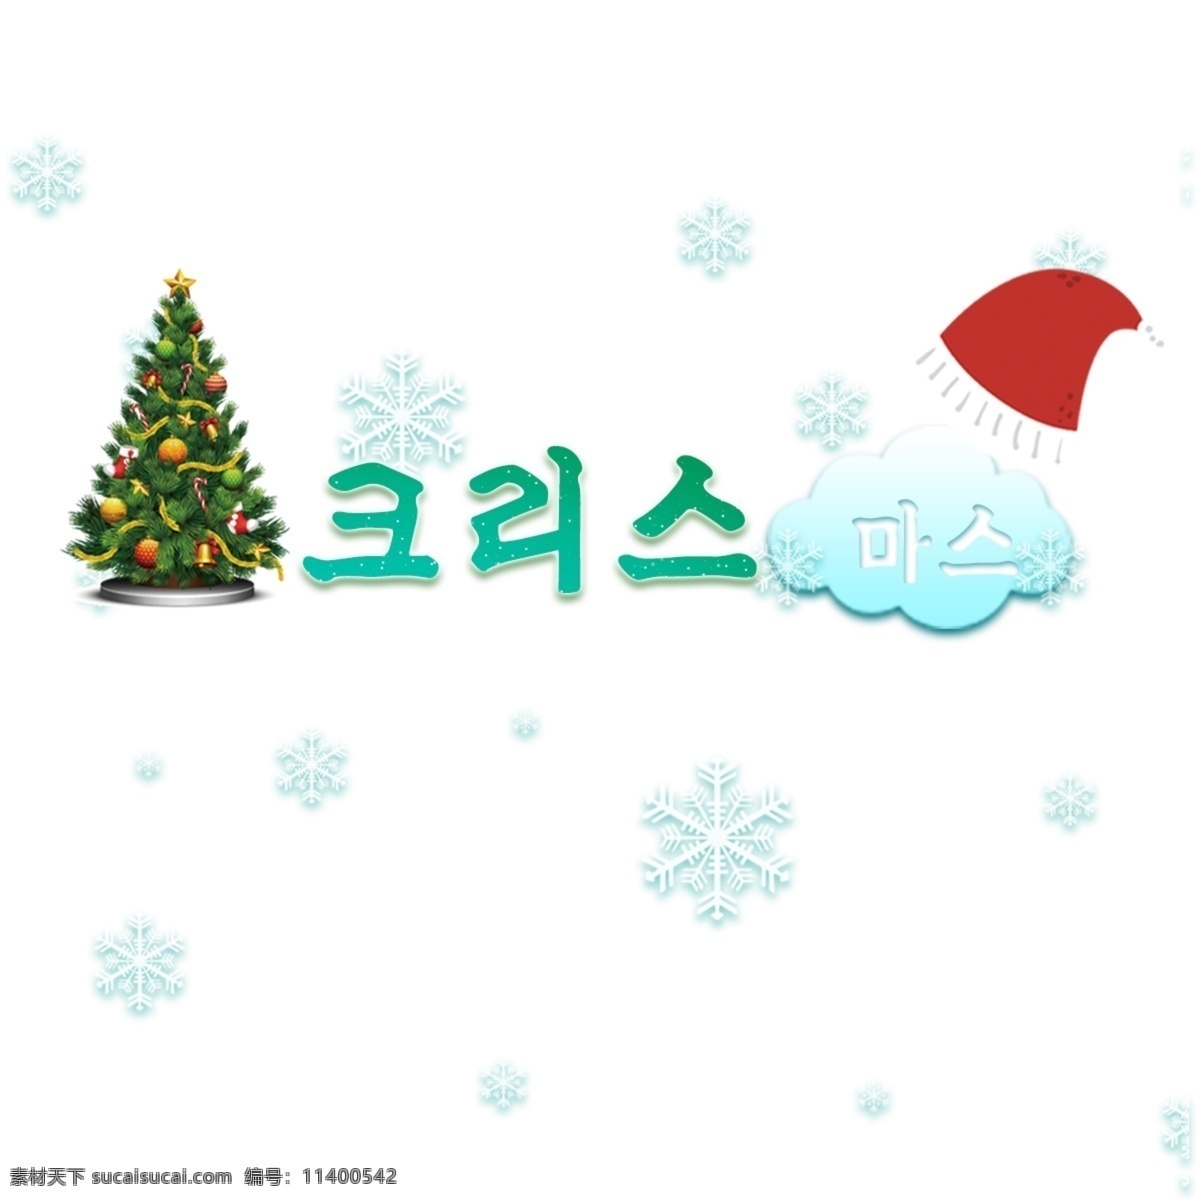 韩国 圣诞快乐 圣诞节快乐 海报 节 礼品 韩国字体 字形 字符 冬季 惊 帽子 圣诞树